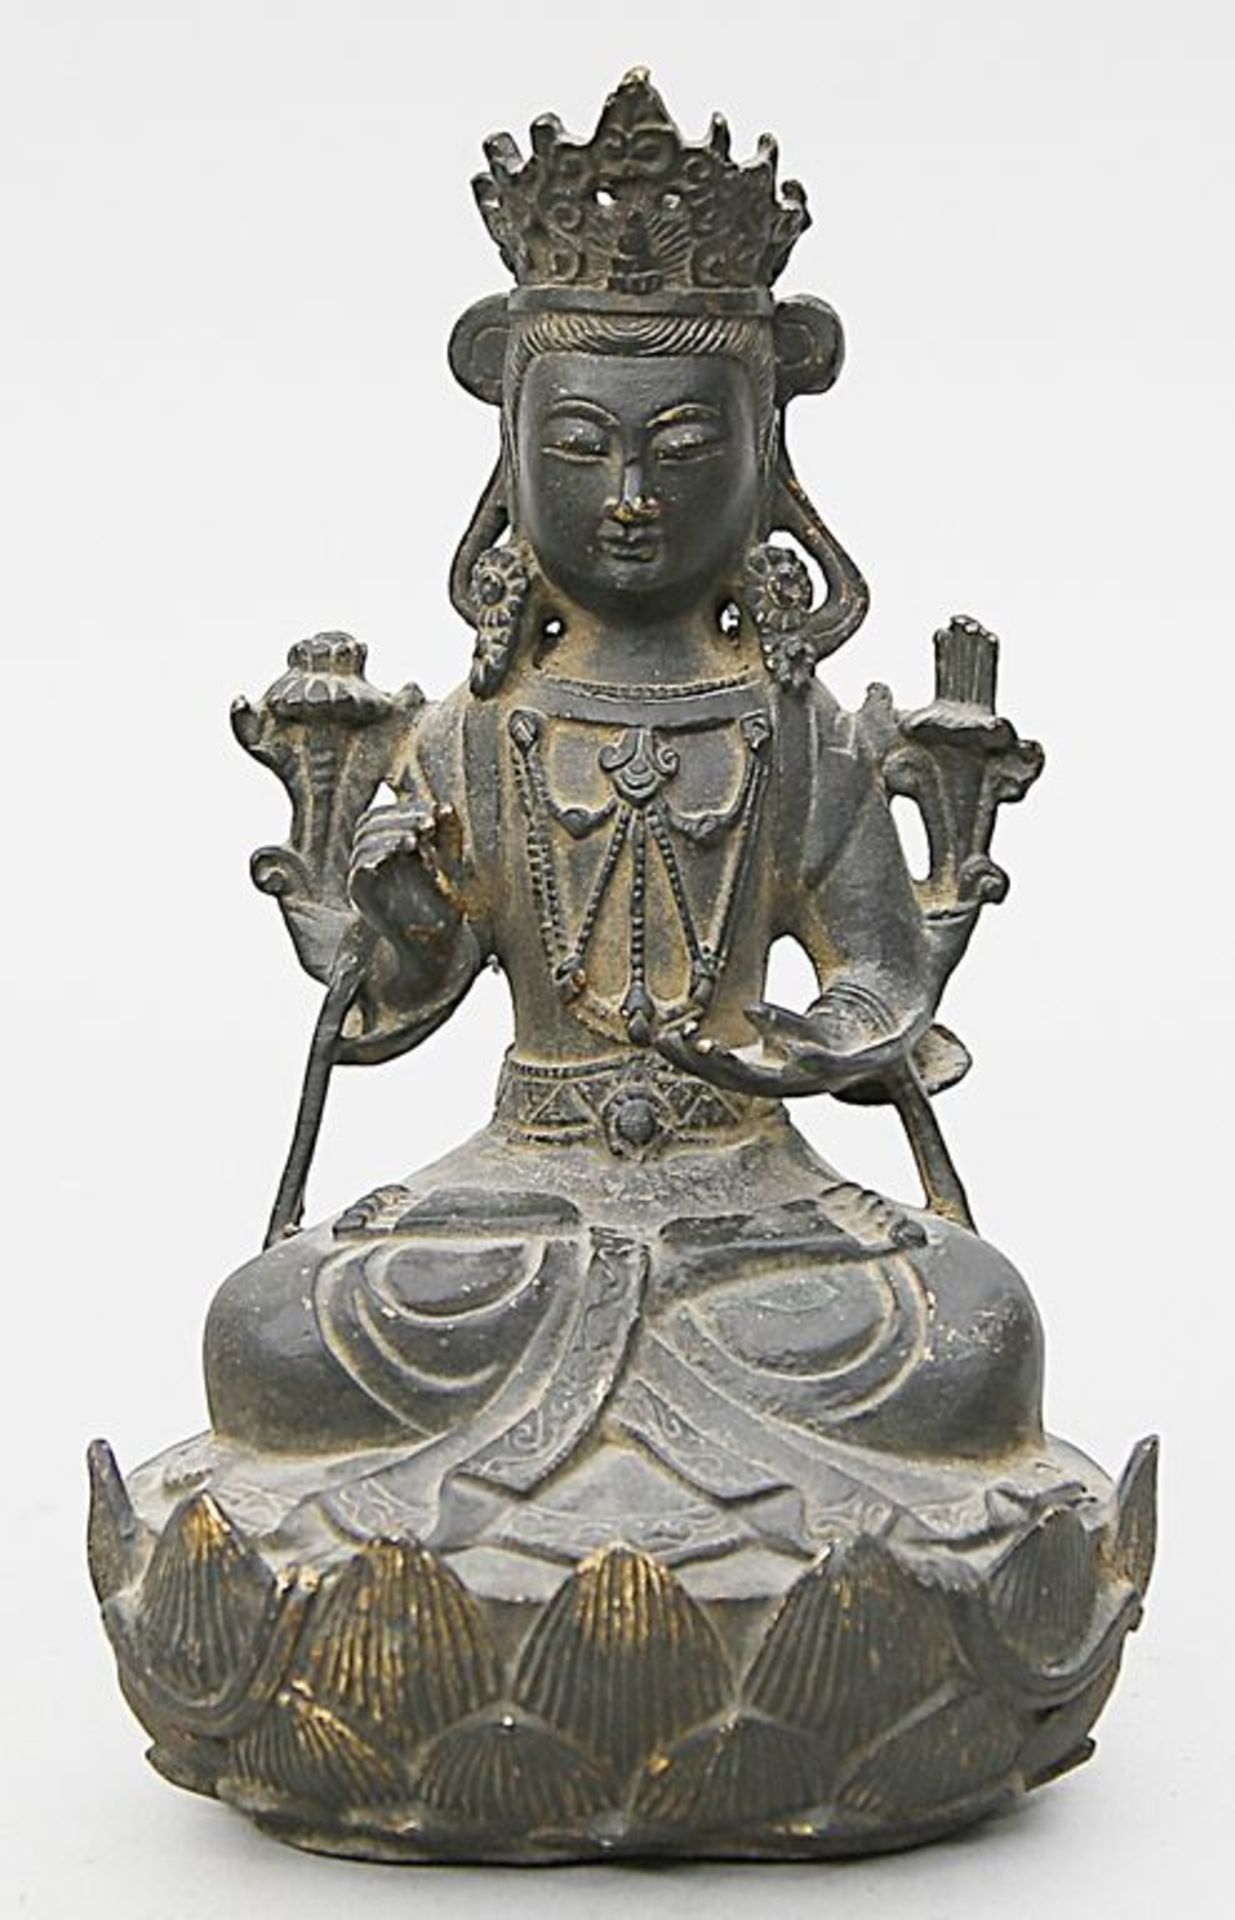 Skulptur "Bodhisattva Guanyin", Ming-Zeit. Bronze. Schwarz-braune Patina mit Resten ehemaliger